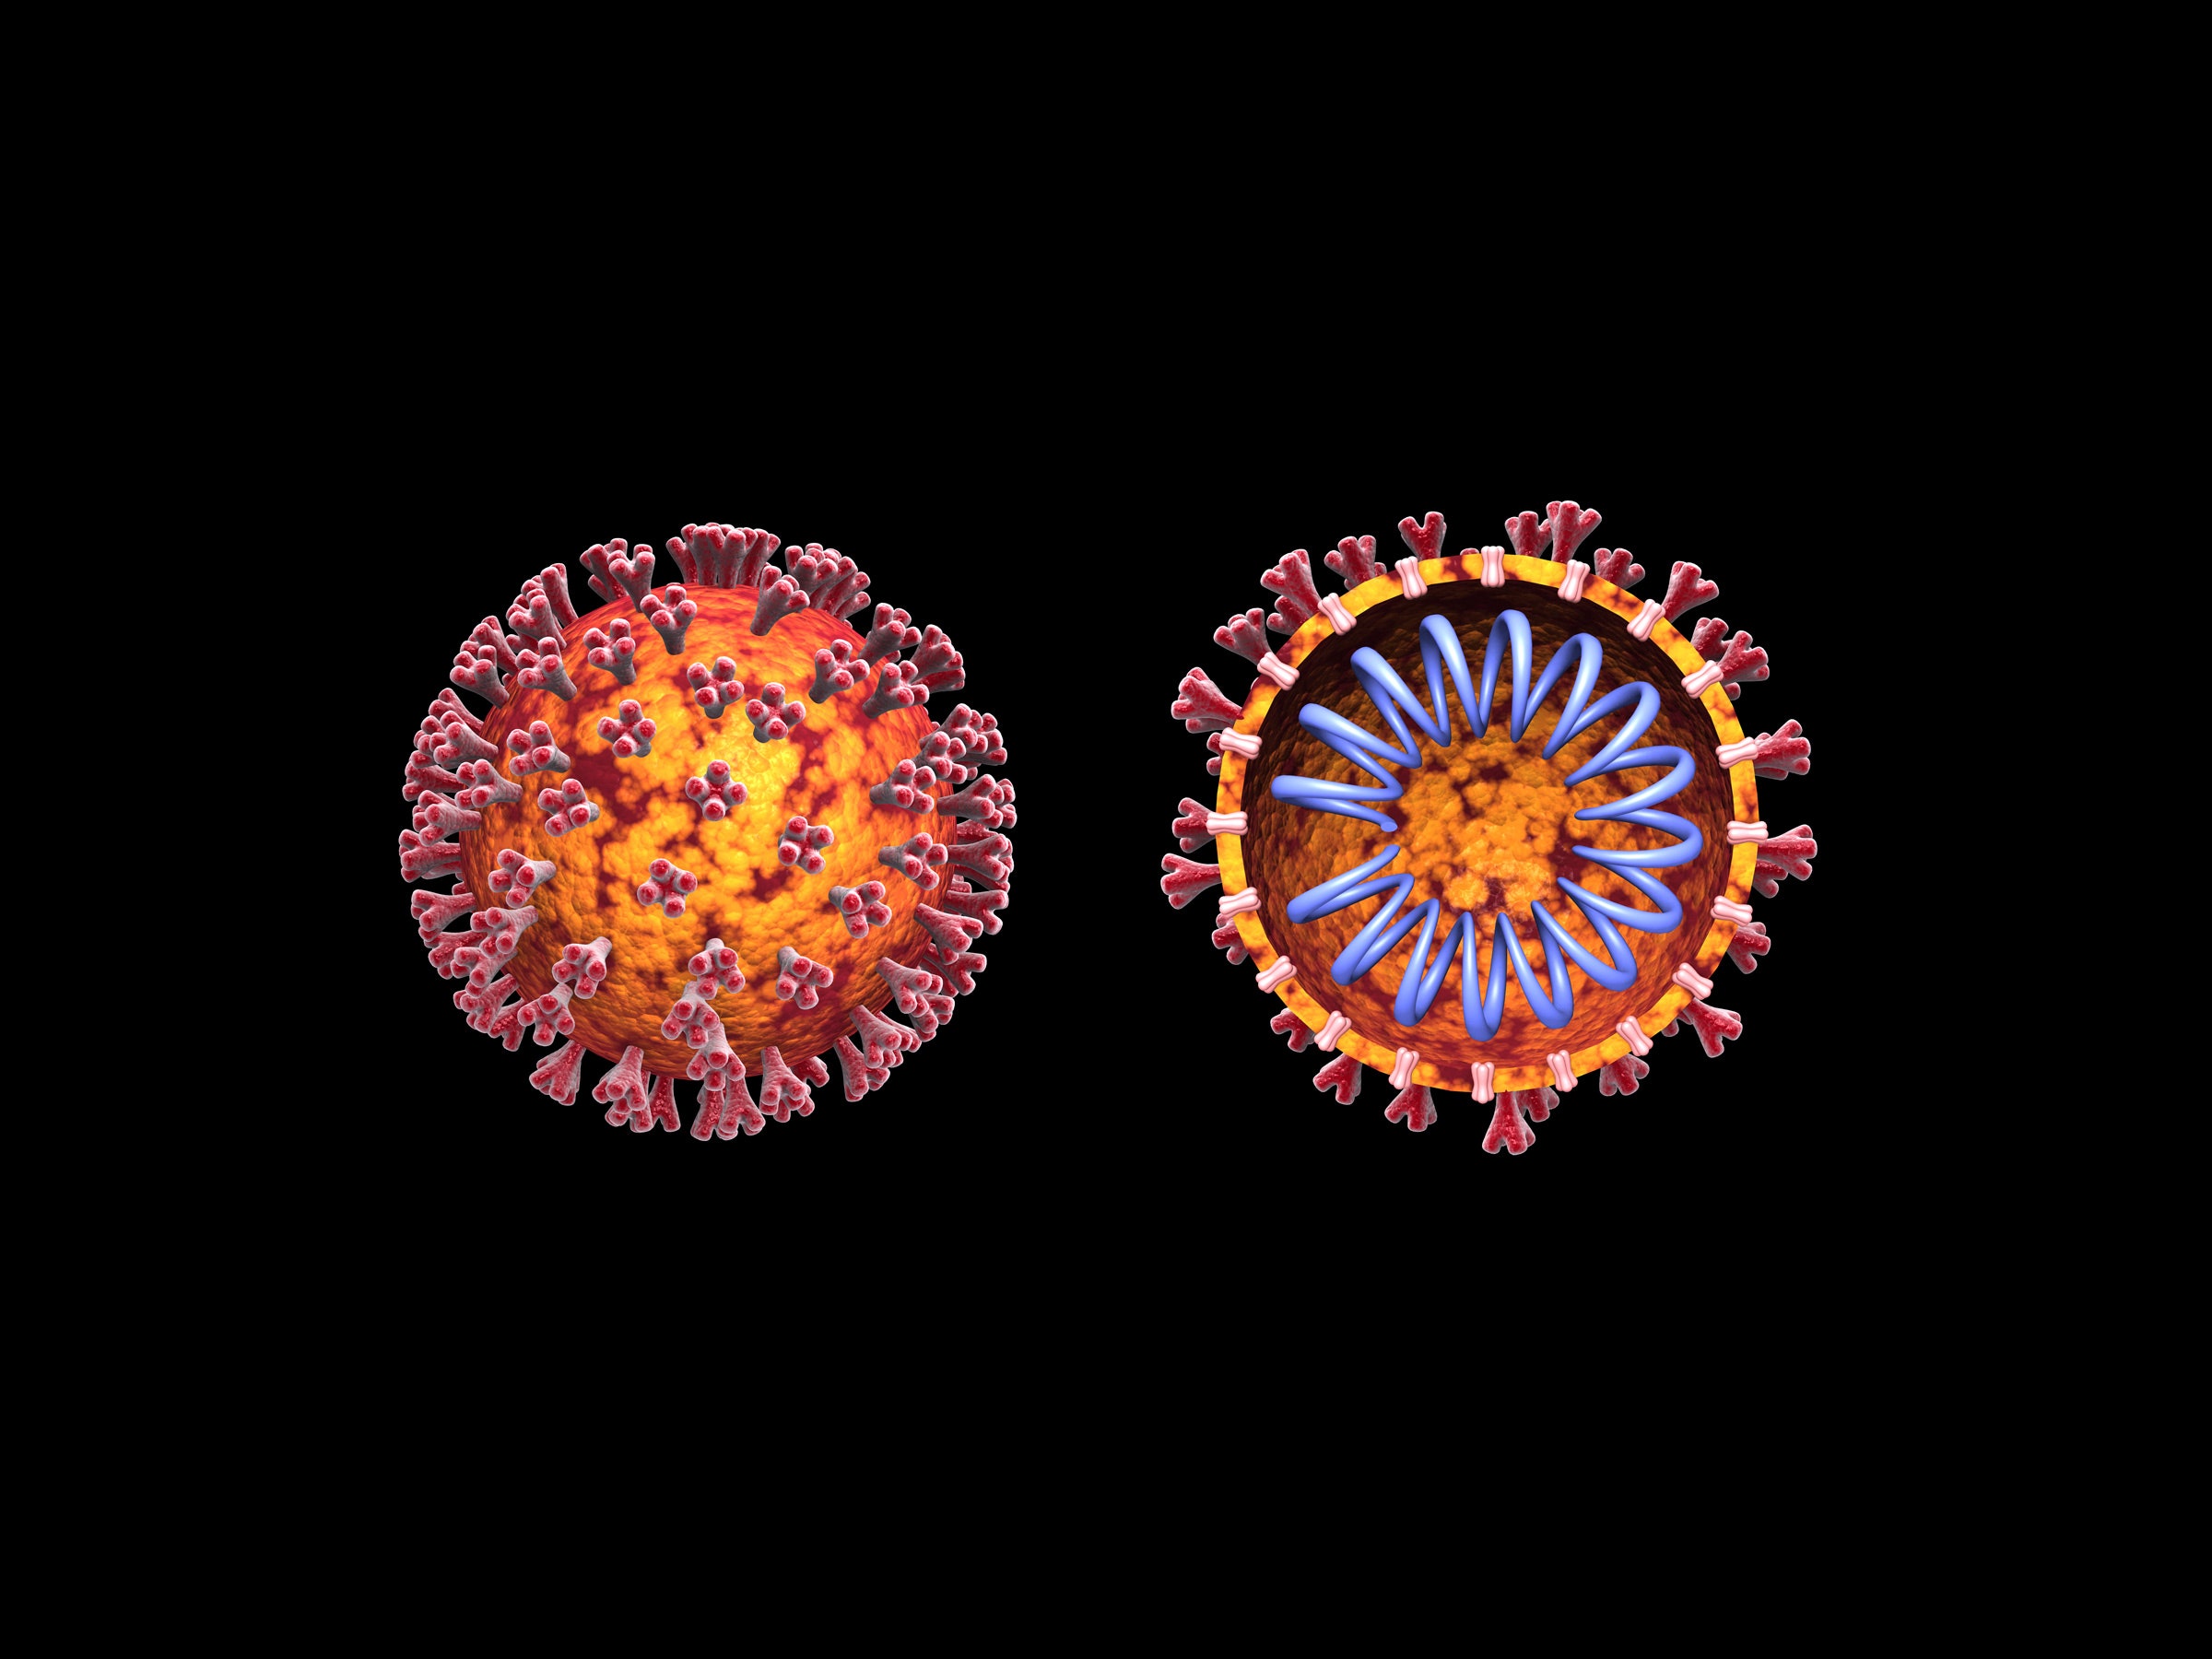 Ilustração 3D do coronavírus COVID19 com vista transversal